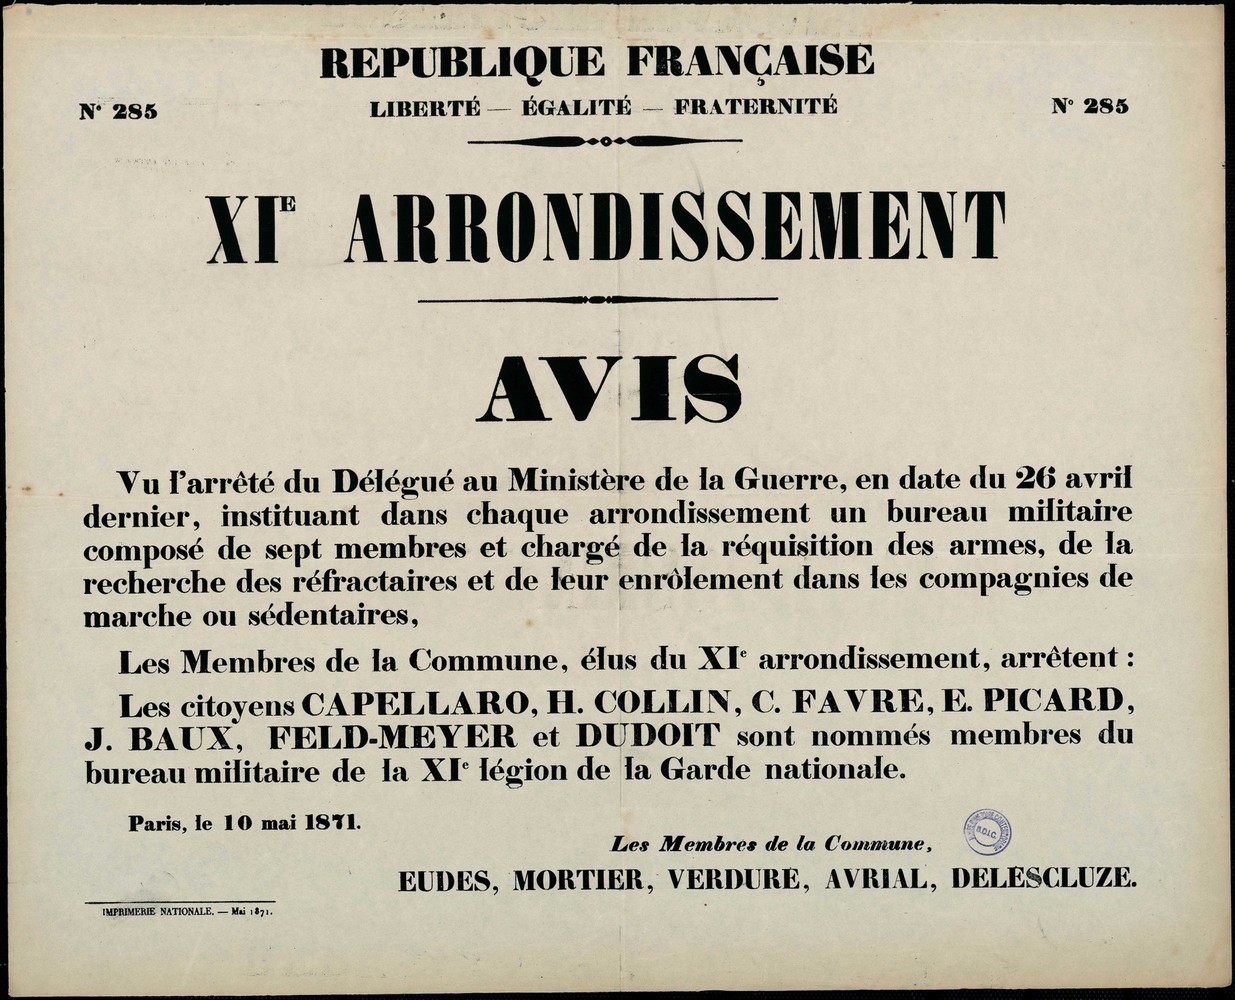 Affriche de la Commune de Paris N° 285 du 10 mai 1871 - Paris XIème, nomination à la XIème Légion de la Garde nationale (Source : argonnaute.parisnanterre.fr)